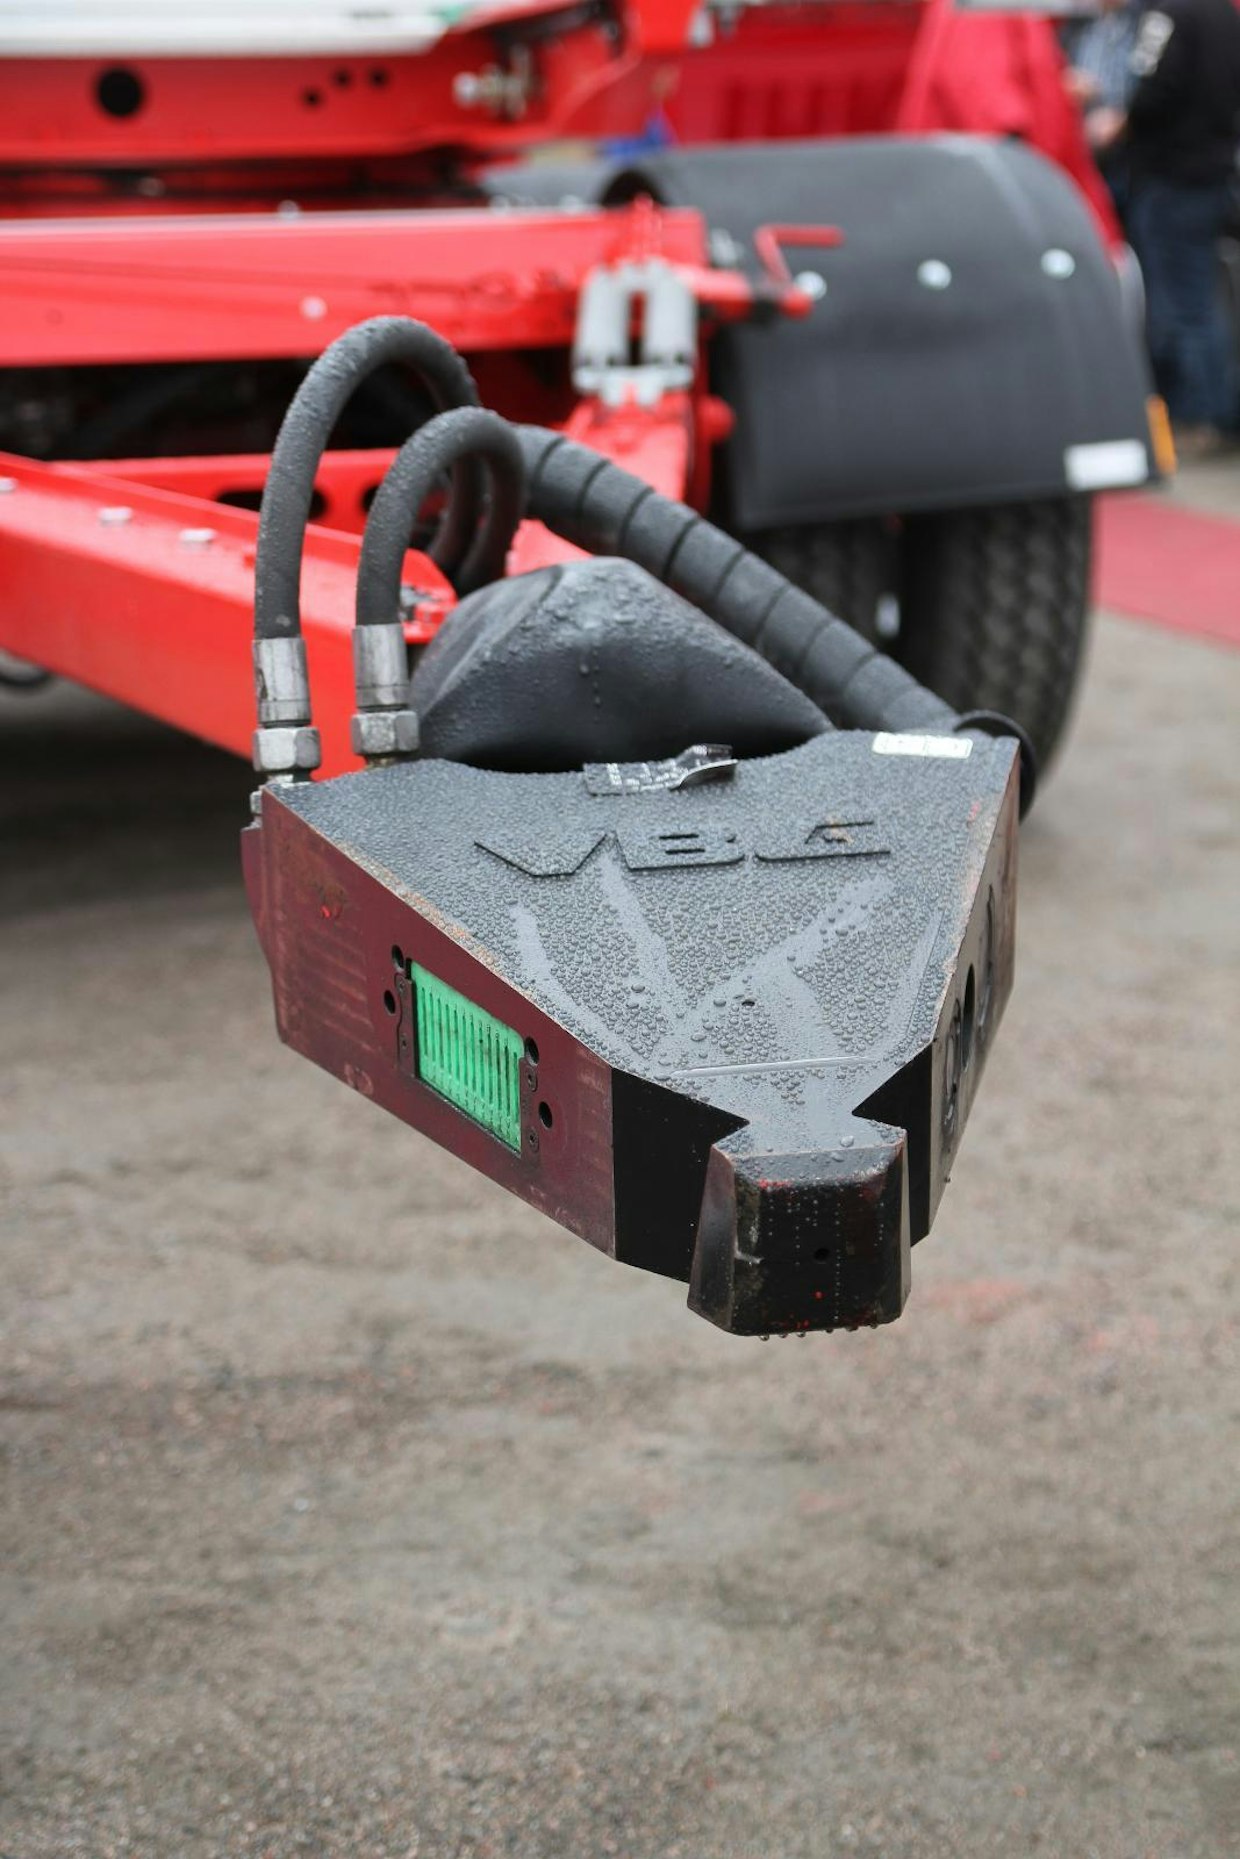 VBG:n MFC automaattinen vetokytkin mahdollistaa paineilma-, sähkö- ja hydrauliikkaliitäntöjen kytkennän ja irrotuksen ohjaamosta käsin ajoneuvosta poistumatta. Ratkaisu vähentää riskejä ja parantaa kuljettajan työskentelyolosuhteita. (TR)